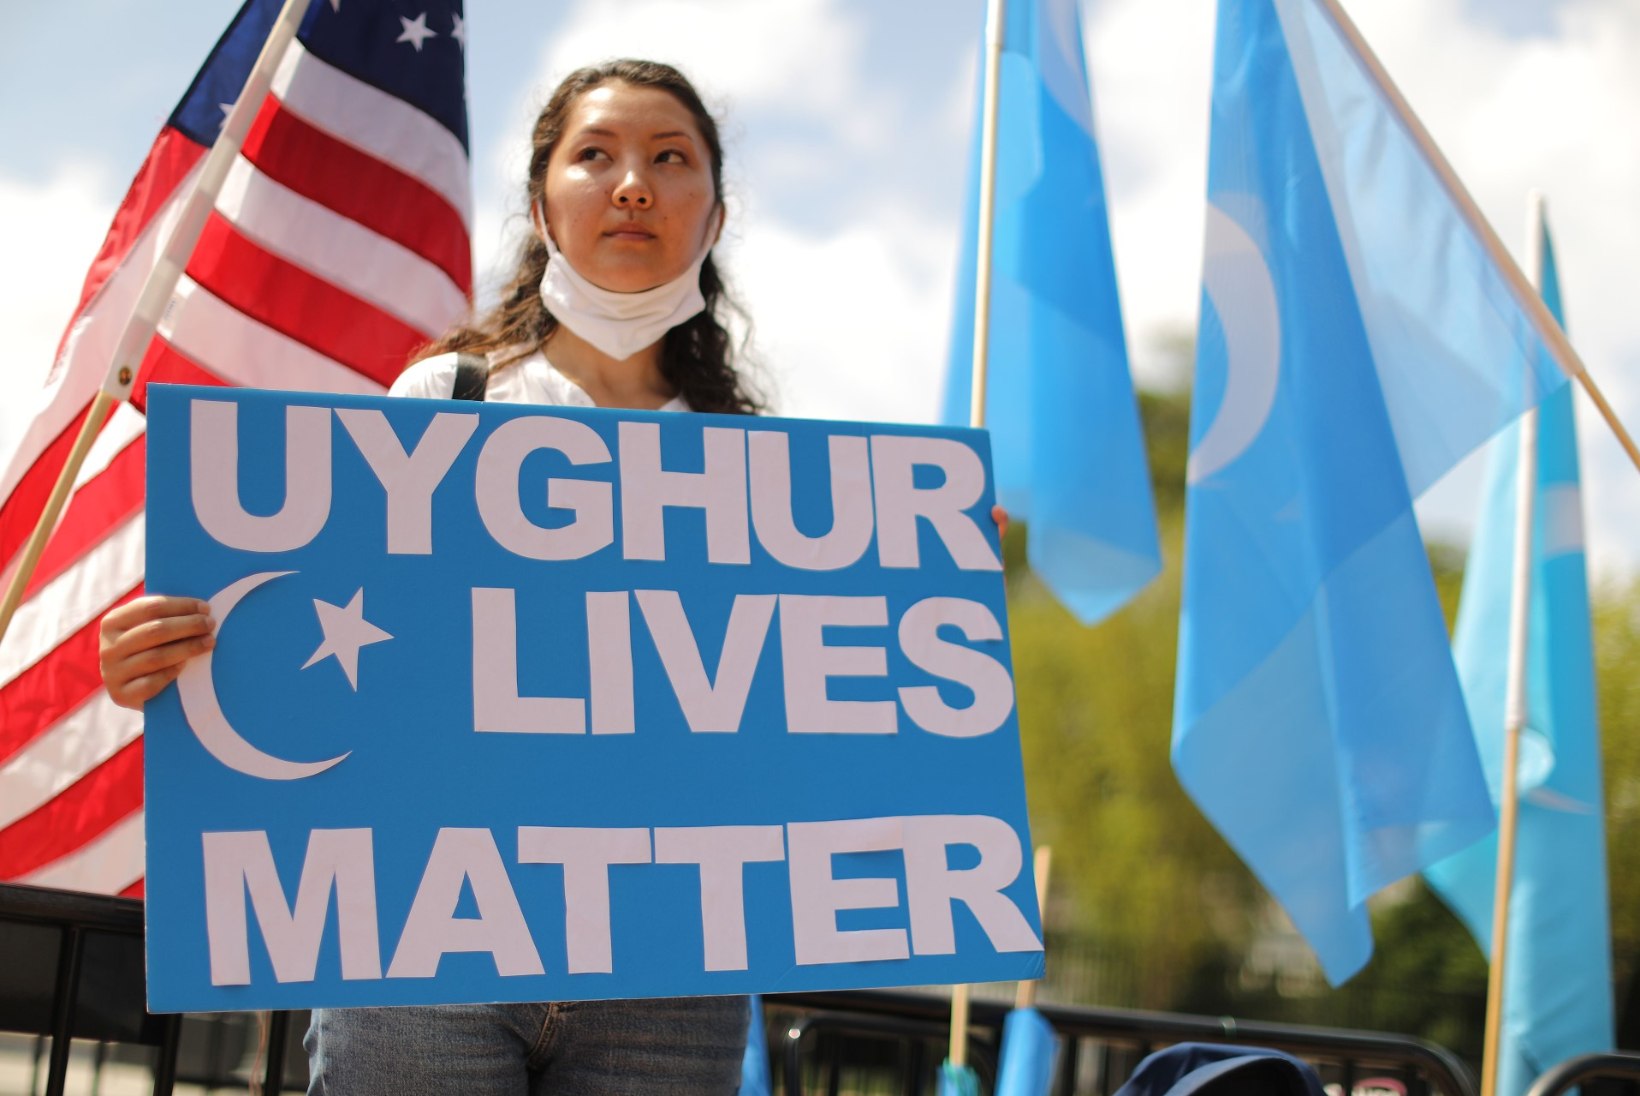 Raport: Hiinas kerkib üha rohkem uiguuride kinnipidamiskeskuseid